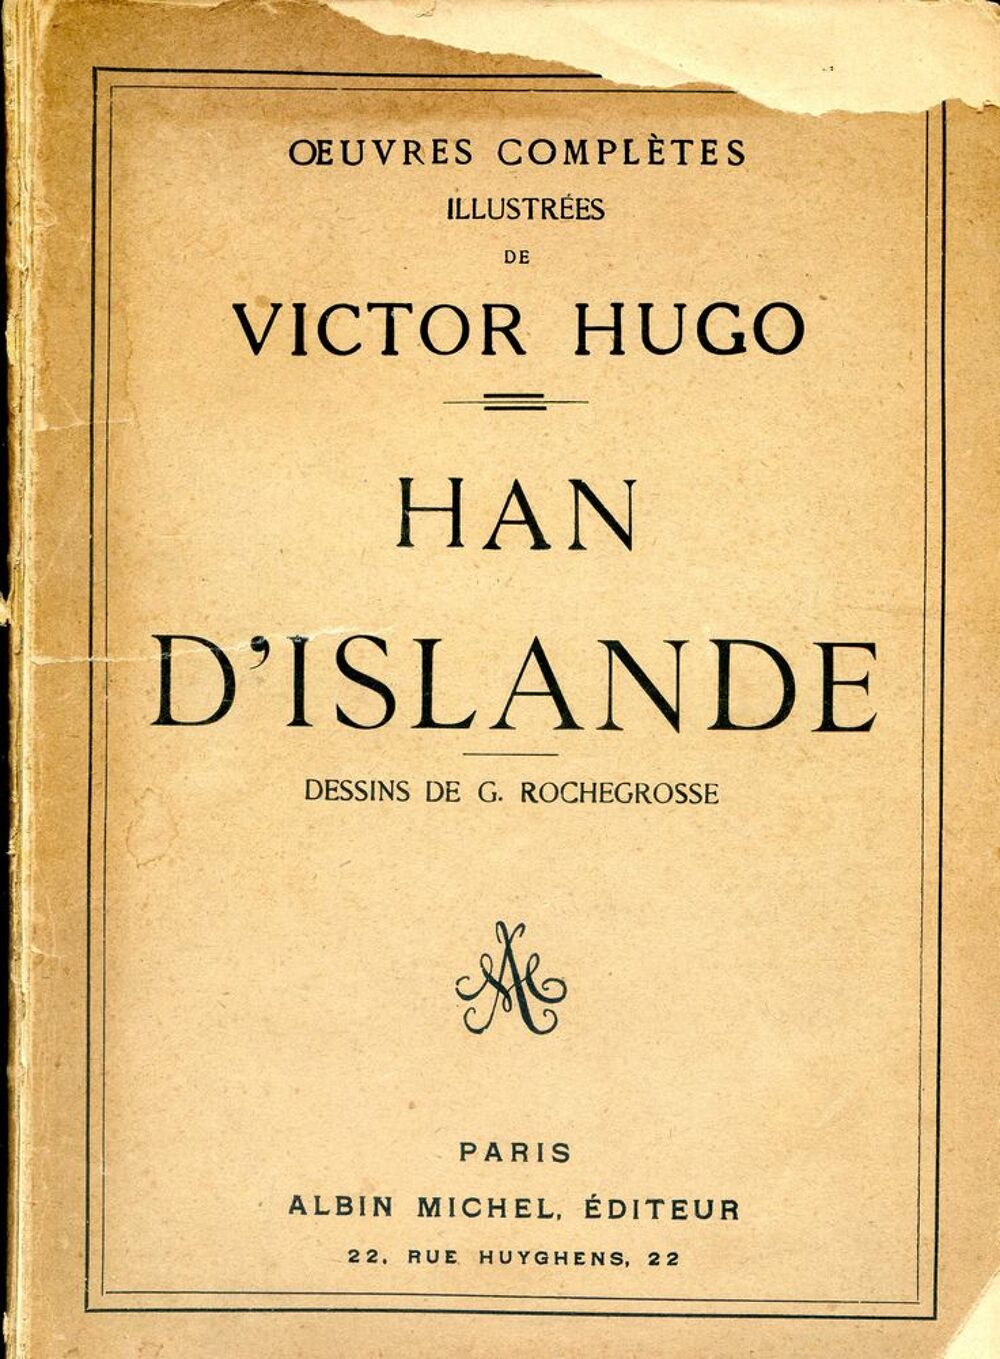 HAN D'ISLANDE - Victor Hugo,
Livres et BD